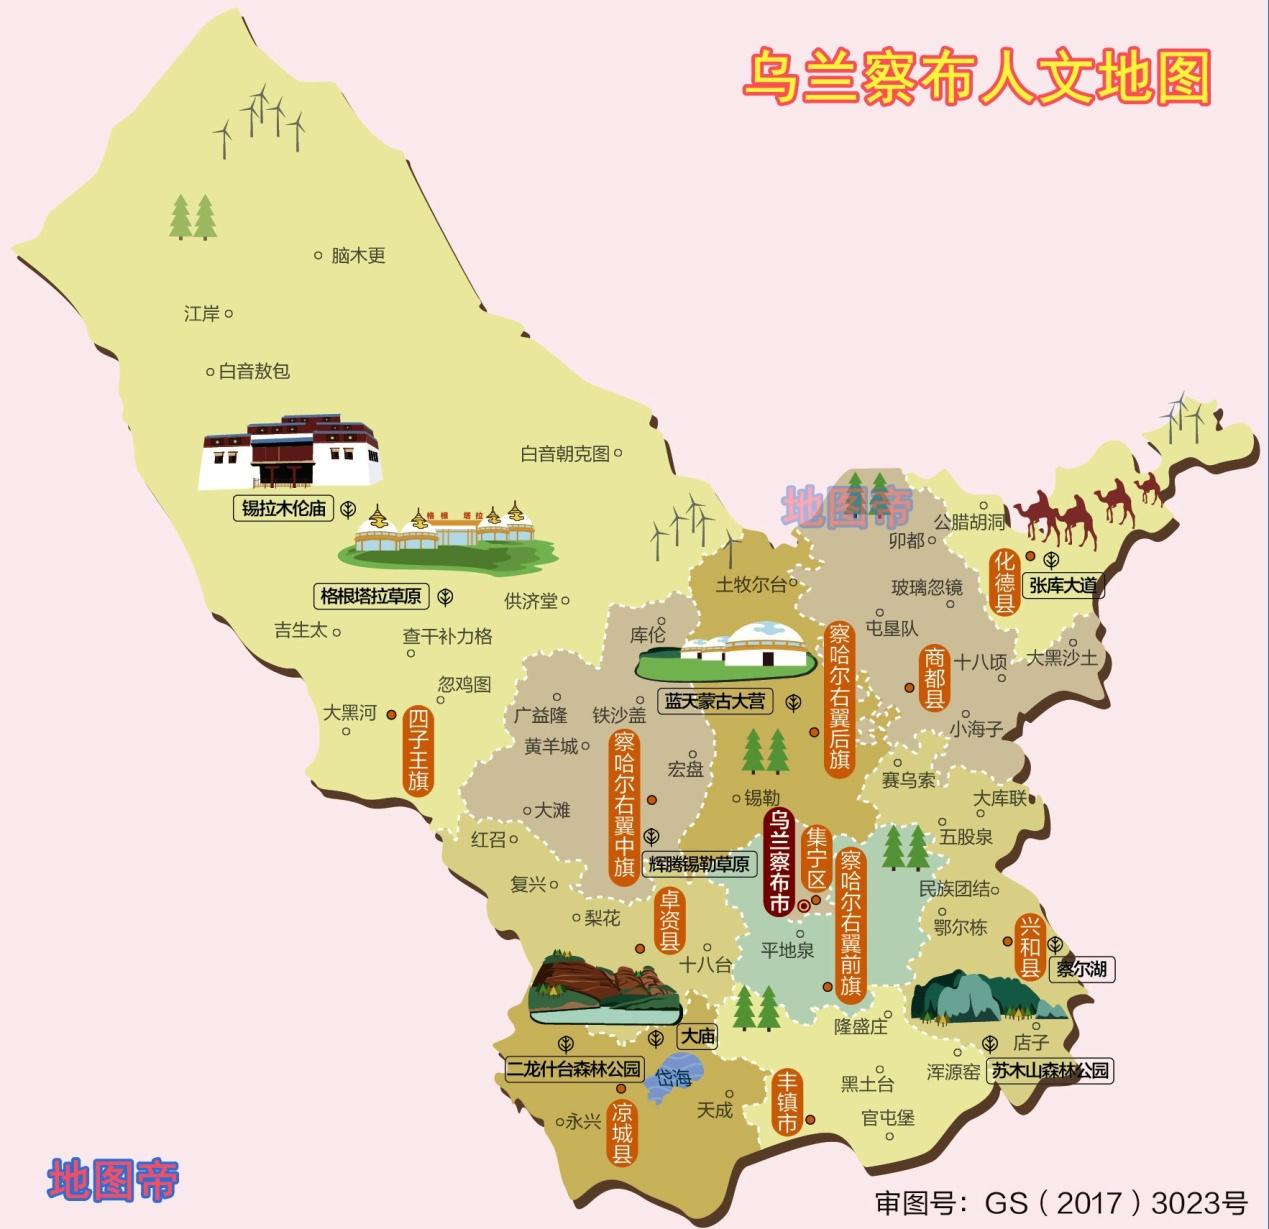 内蒙古盟市分布地图图片